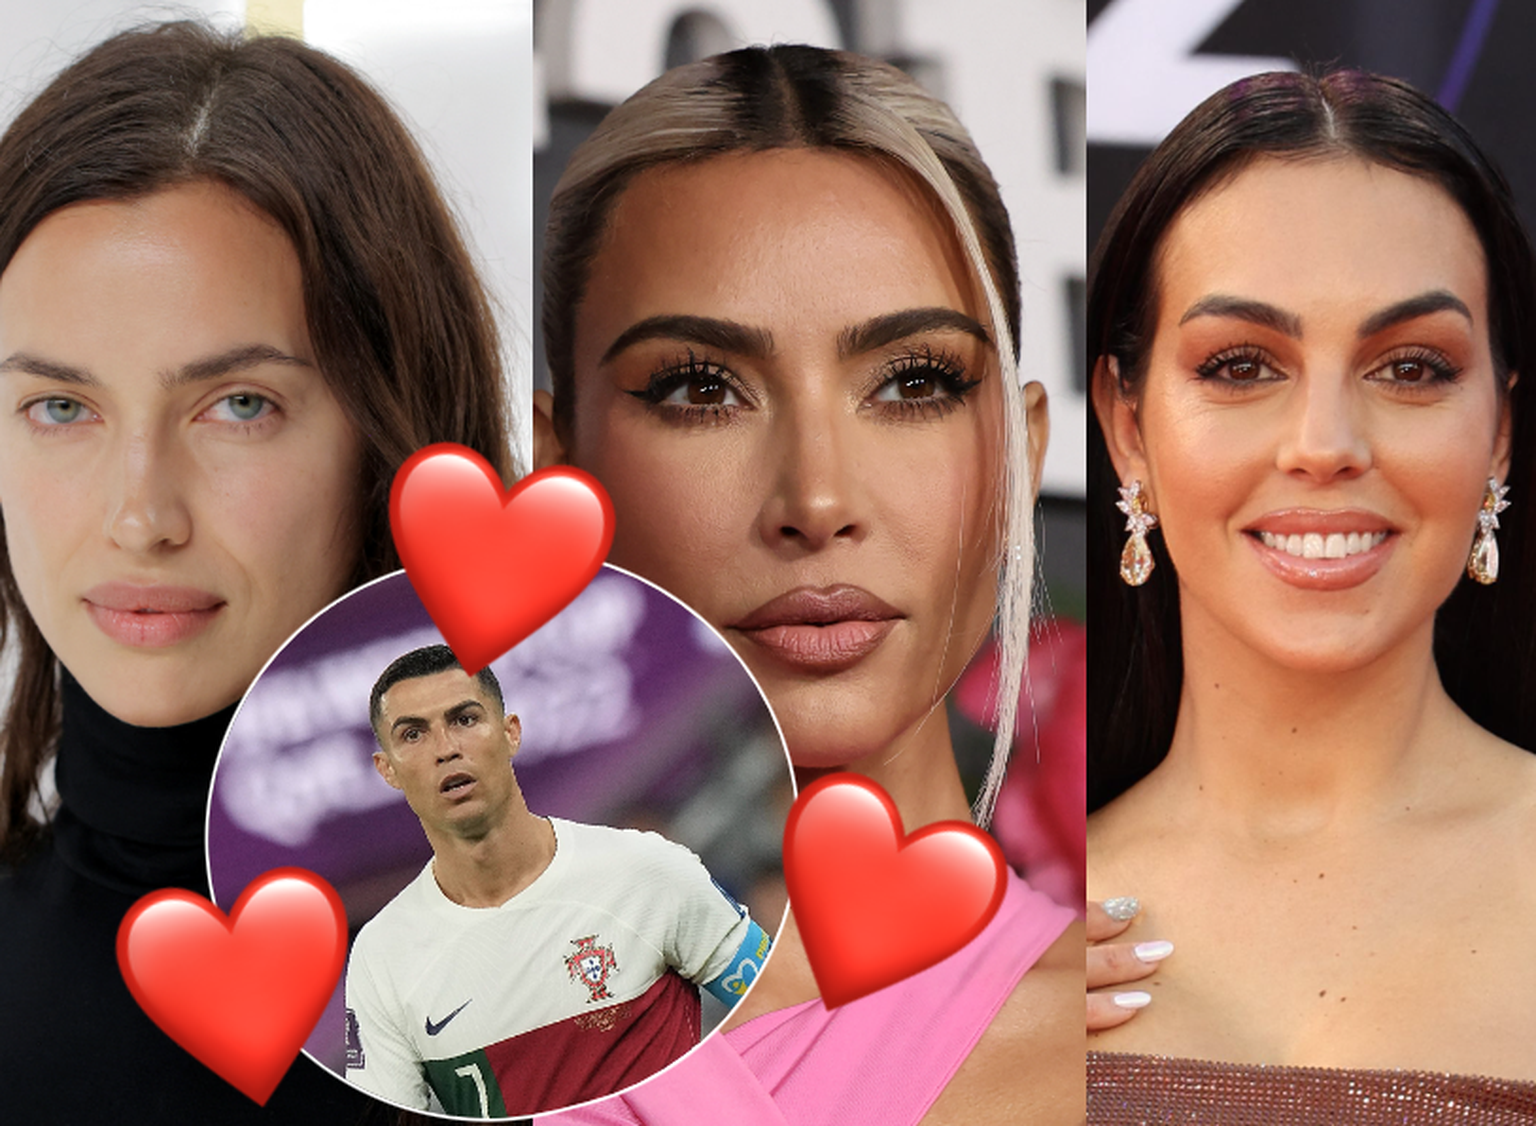 Cristiano Ronaldo on rohkem kui ühe naise unistuste mees, mis tähendab, et sportlase armastuse ja südamevalu nimekiri on üsna pikk. 
Irina Shayk/Kim Kardashian/Georgina Rodriguez